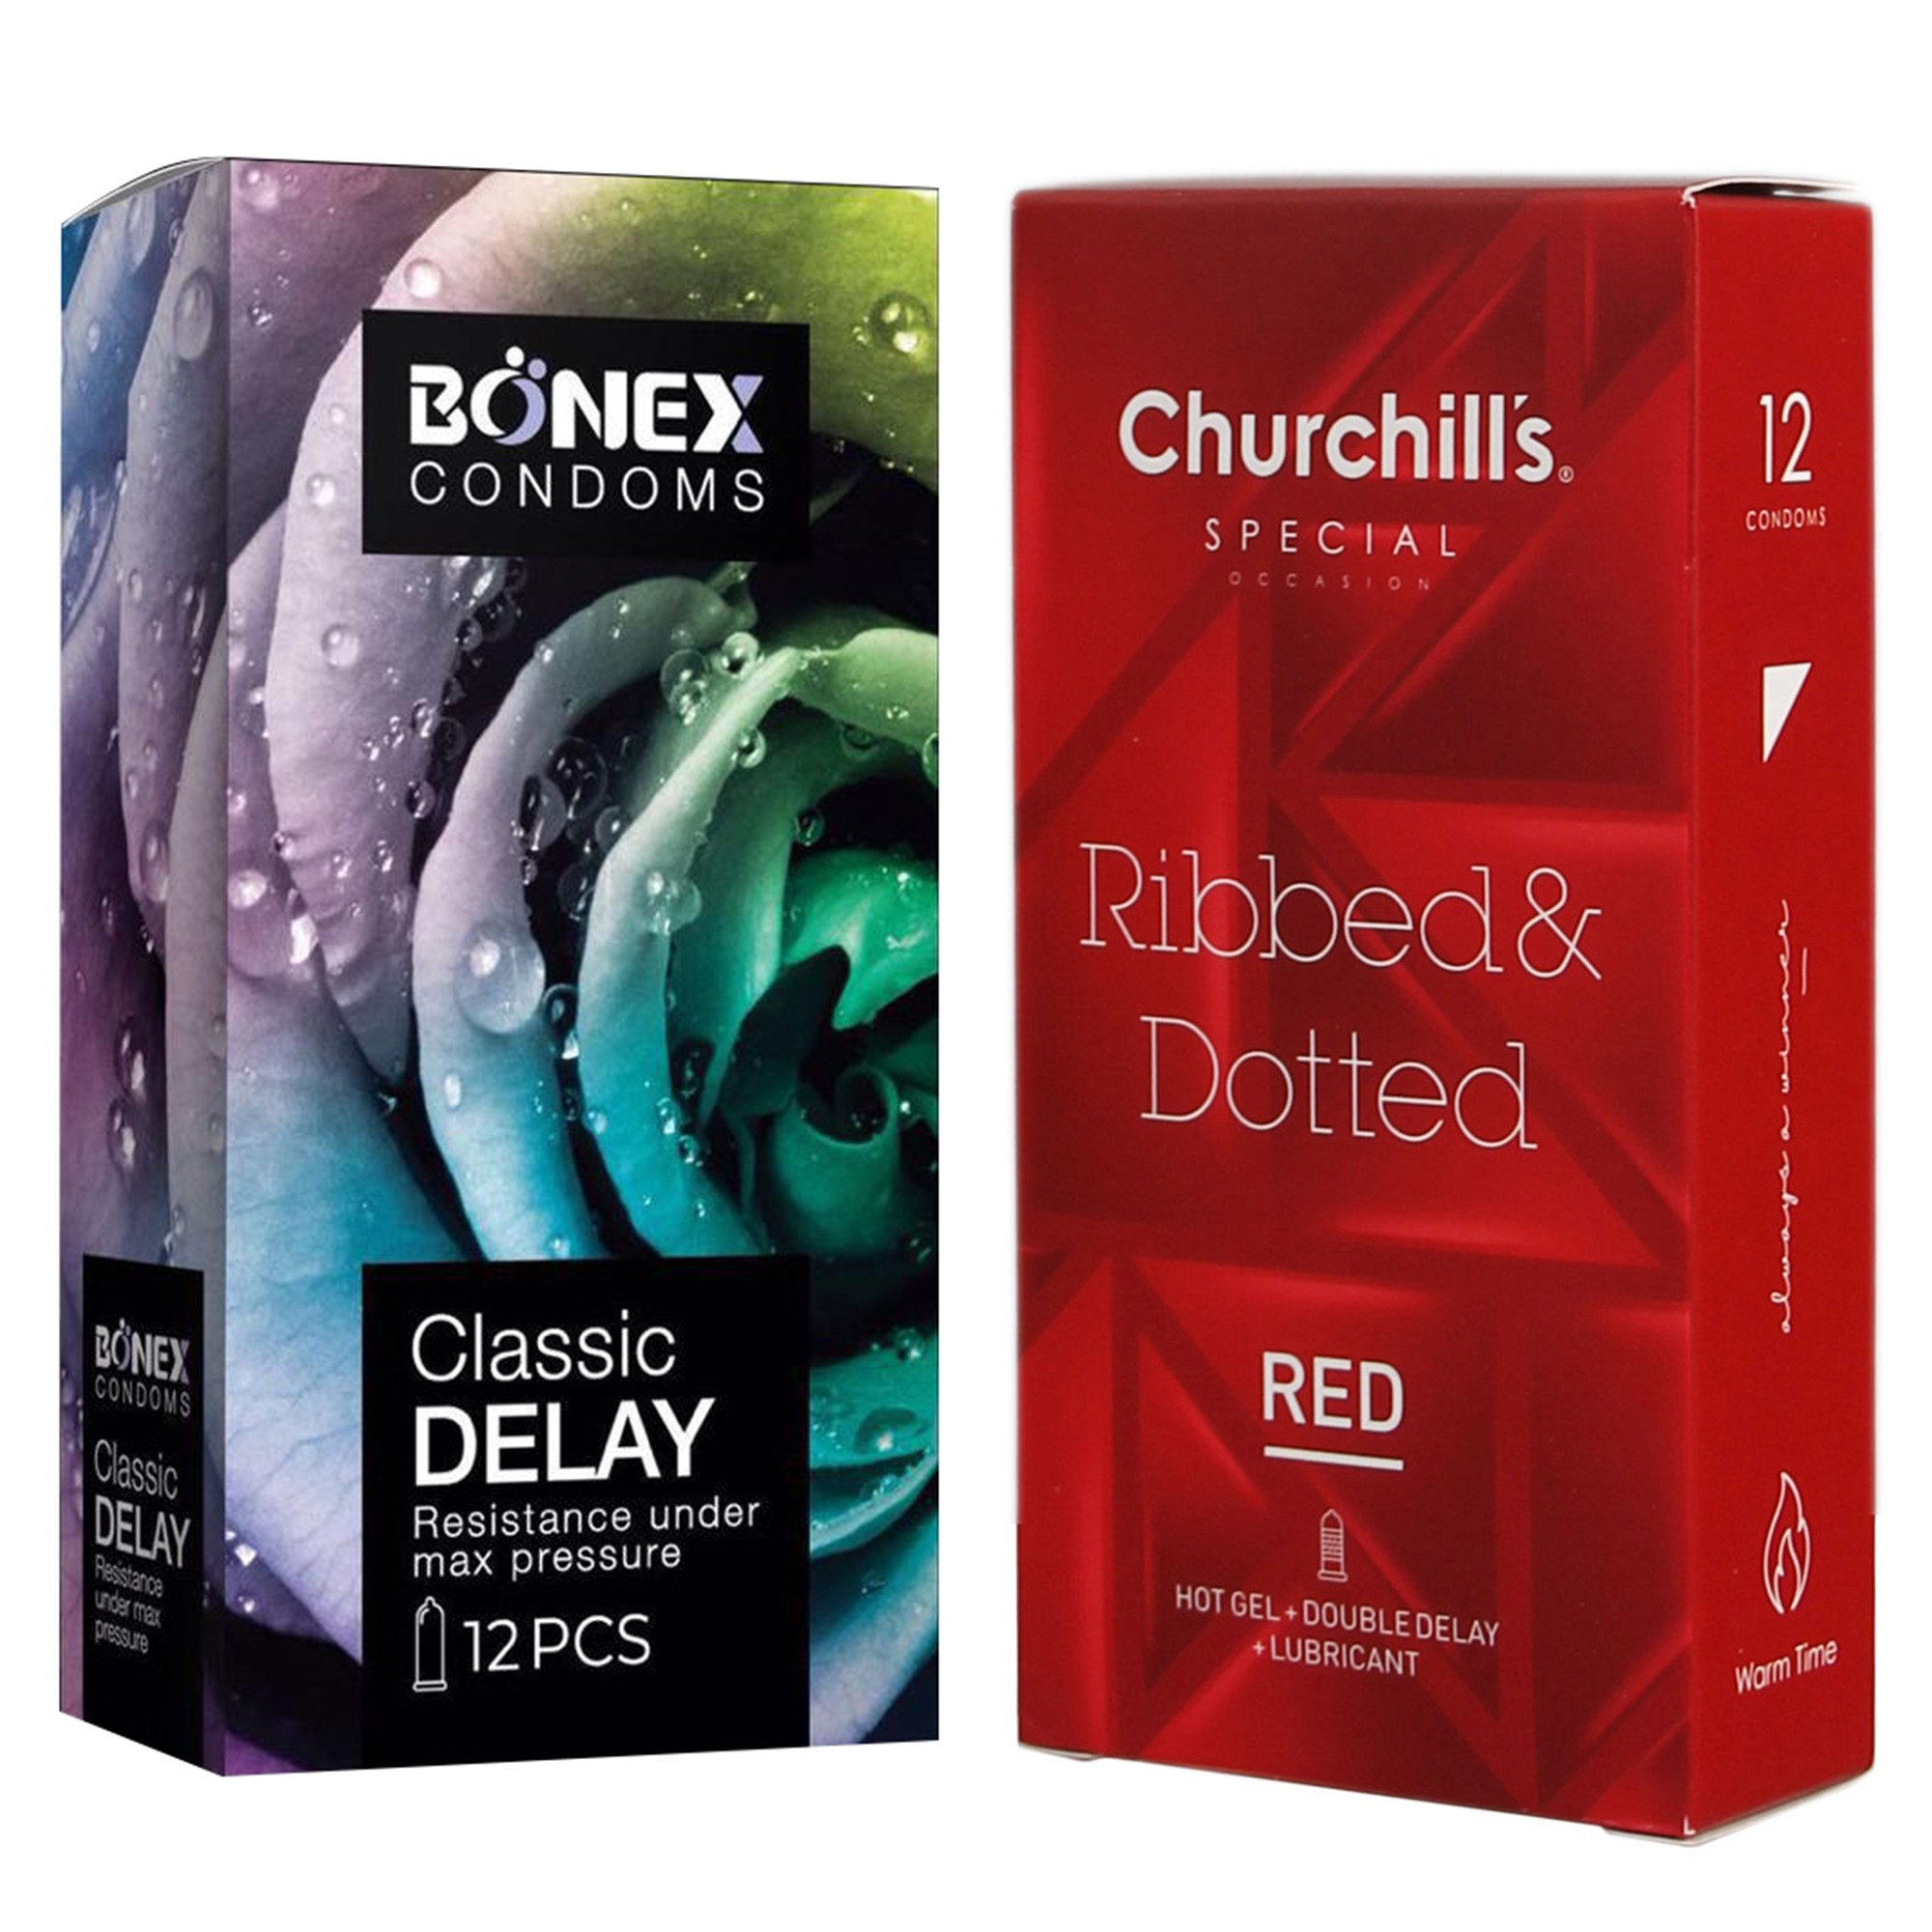 کاندوم چرچیلز مدل Ribbed & Dotted Red بسته 12 عددی به همراه کاندوم بونکس مدل Classic Delay بسته 12 عددی 